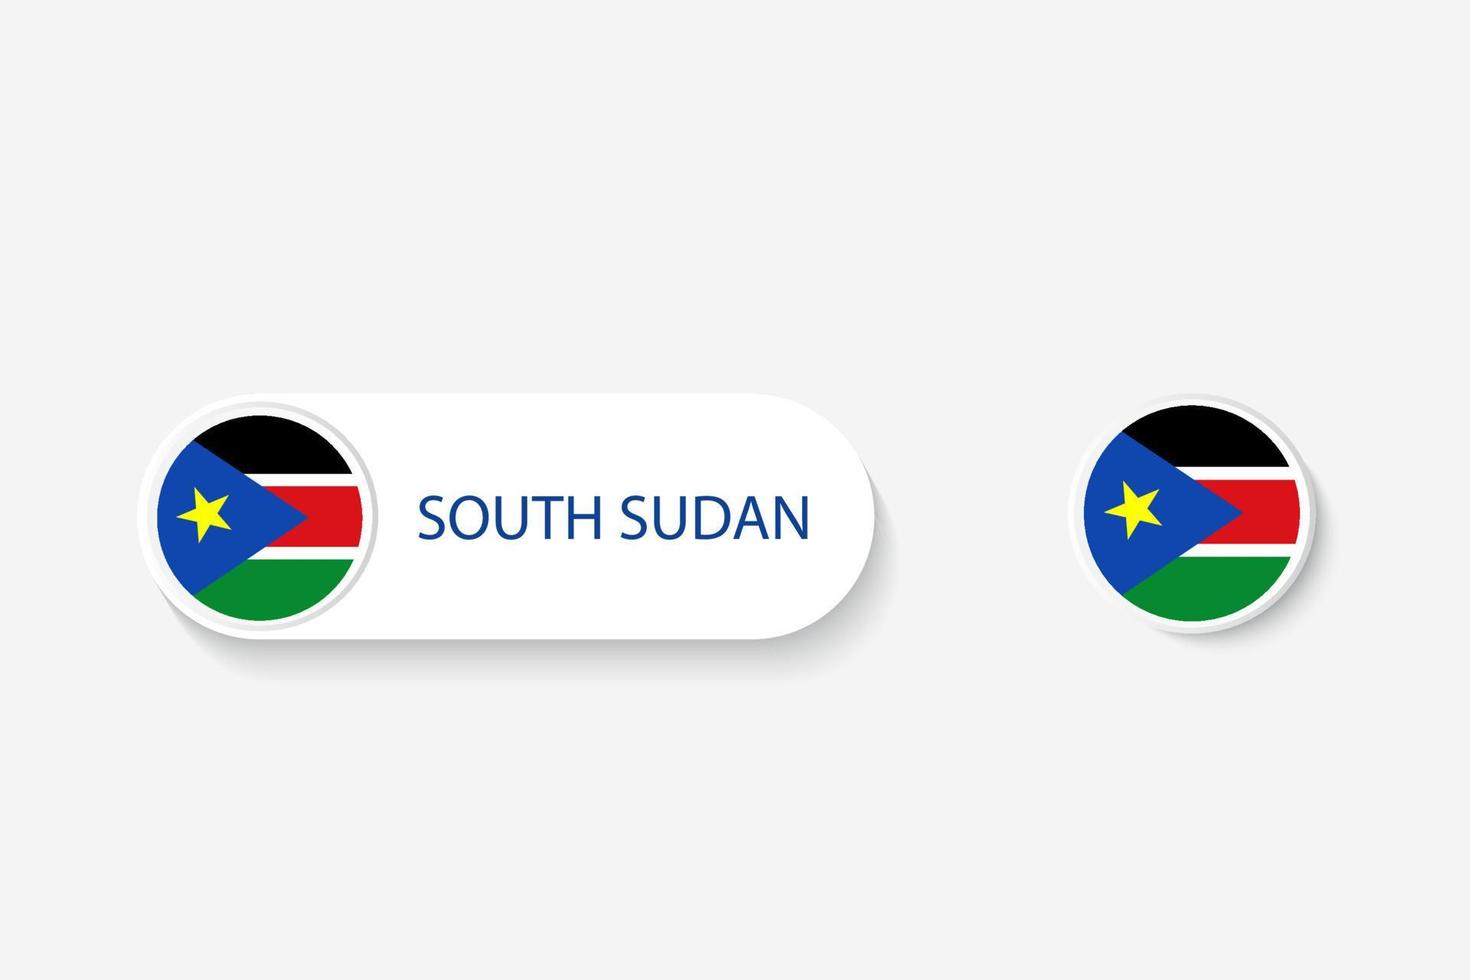 bandera de botón de sudán del sur en ilustración de forma ovalada con palabra de sudán del sur. y botón bandera sudán del sur. vector